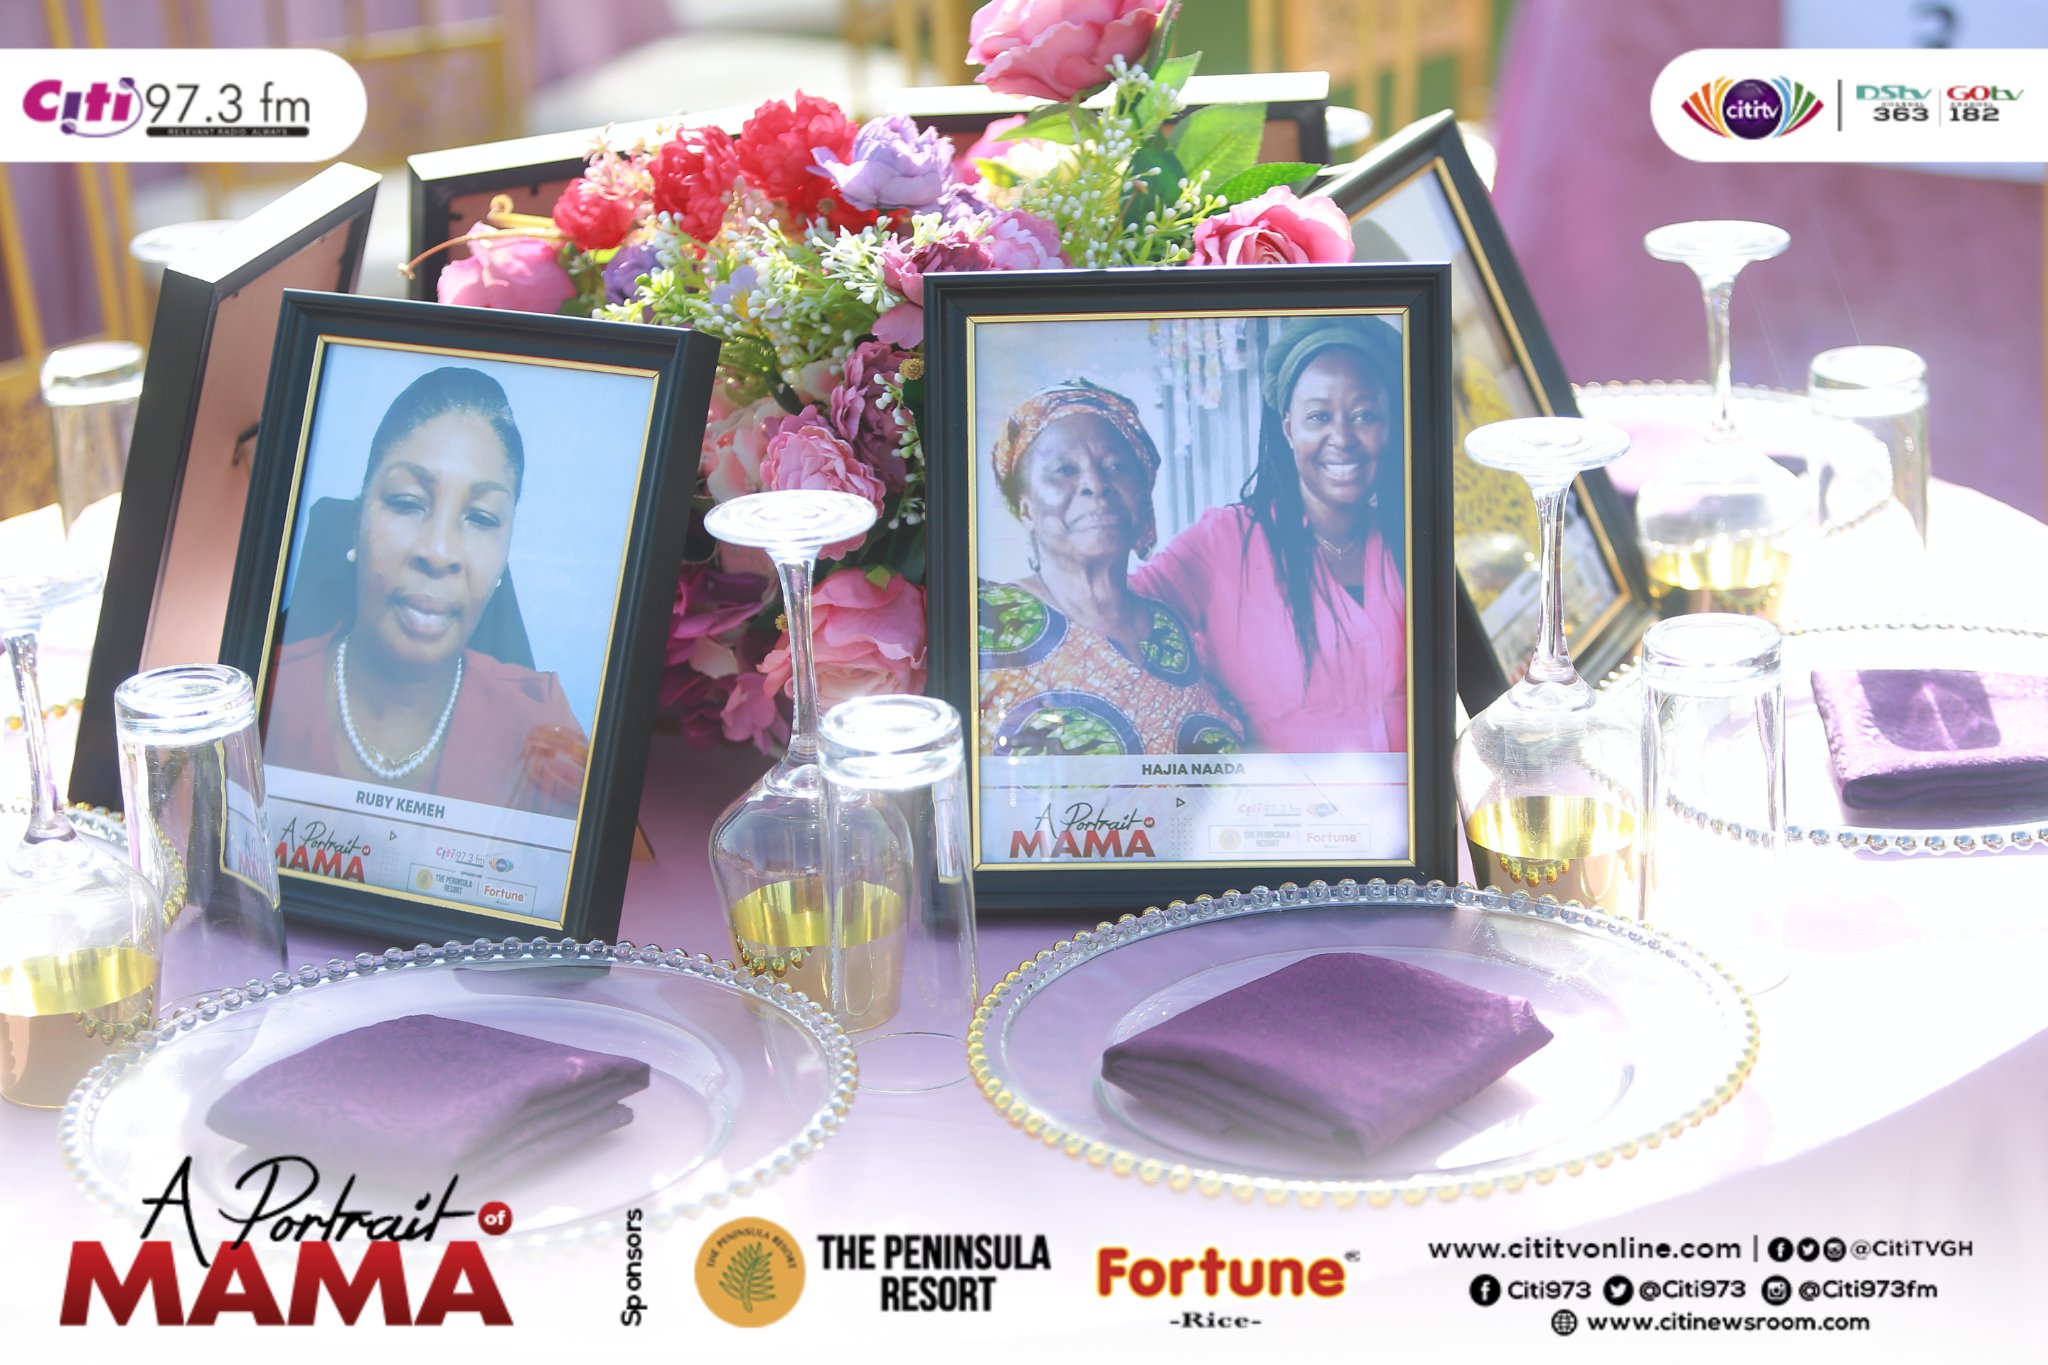 Citi TV/Citi FM’s ‘A Portrait of Mama’ event underway